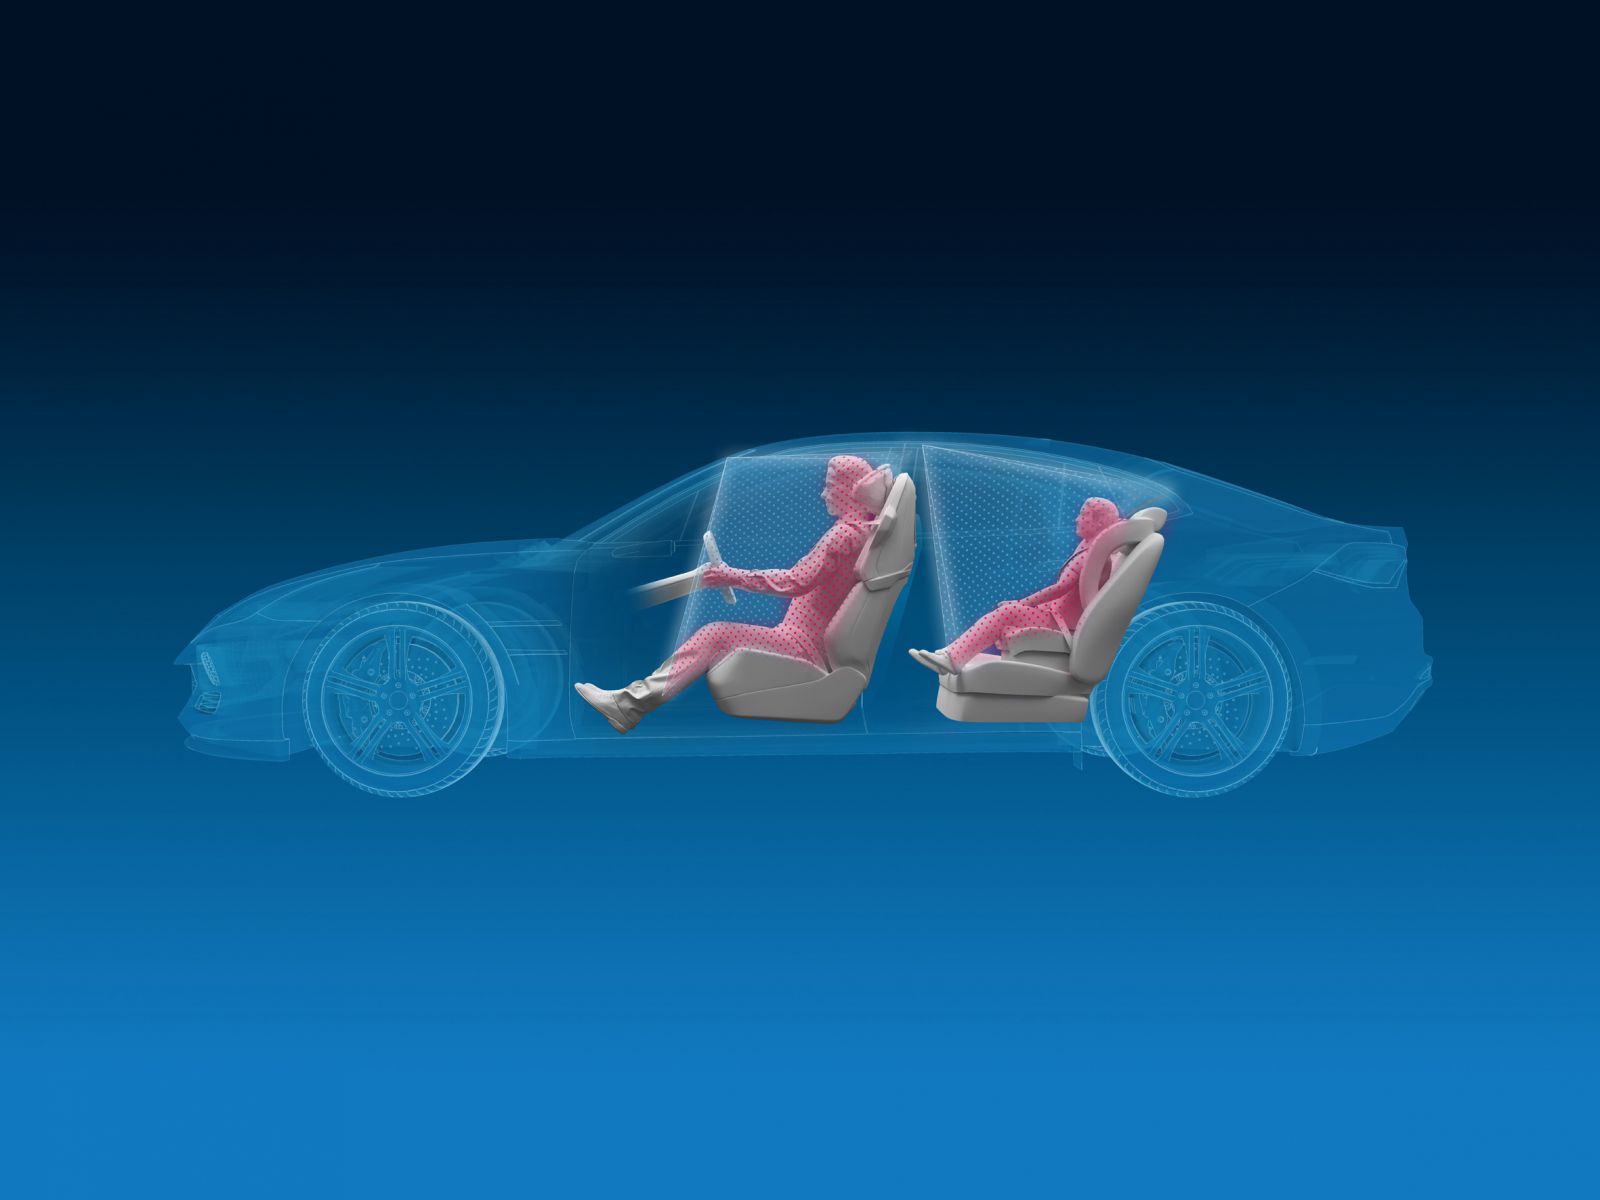 Un sistema 3D per osservare l'abitacolo dell'auto